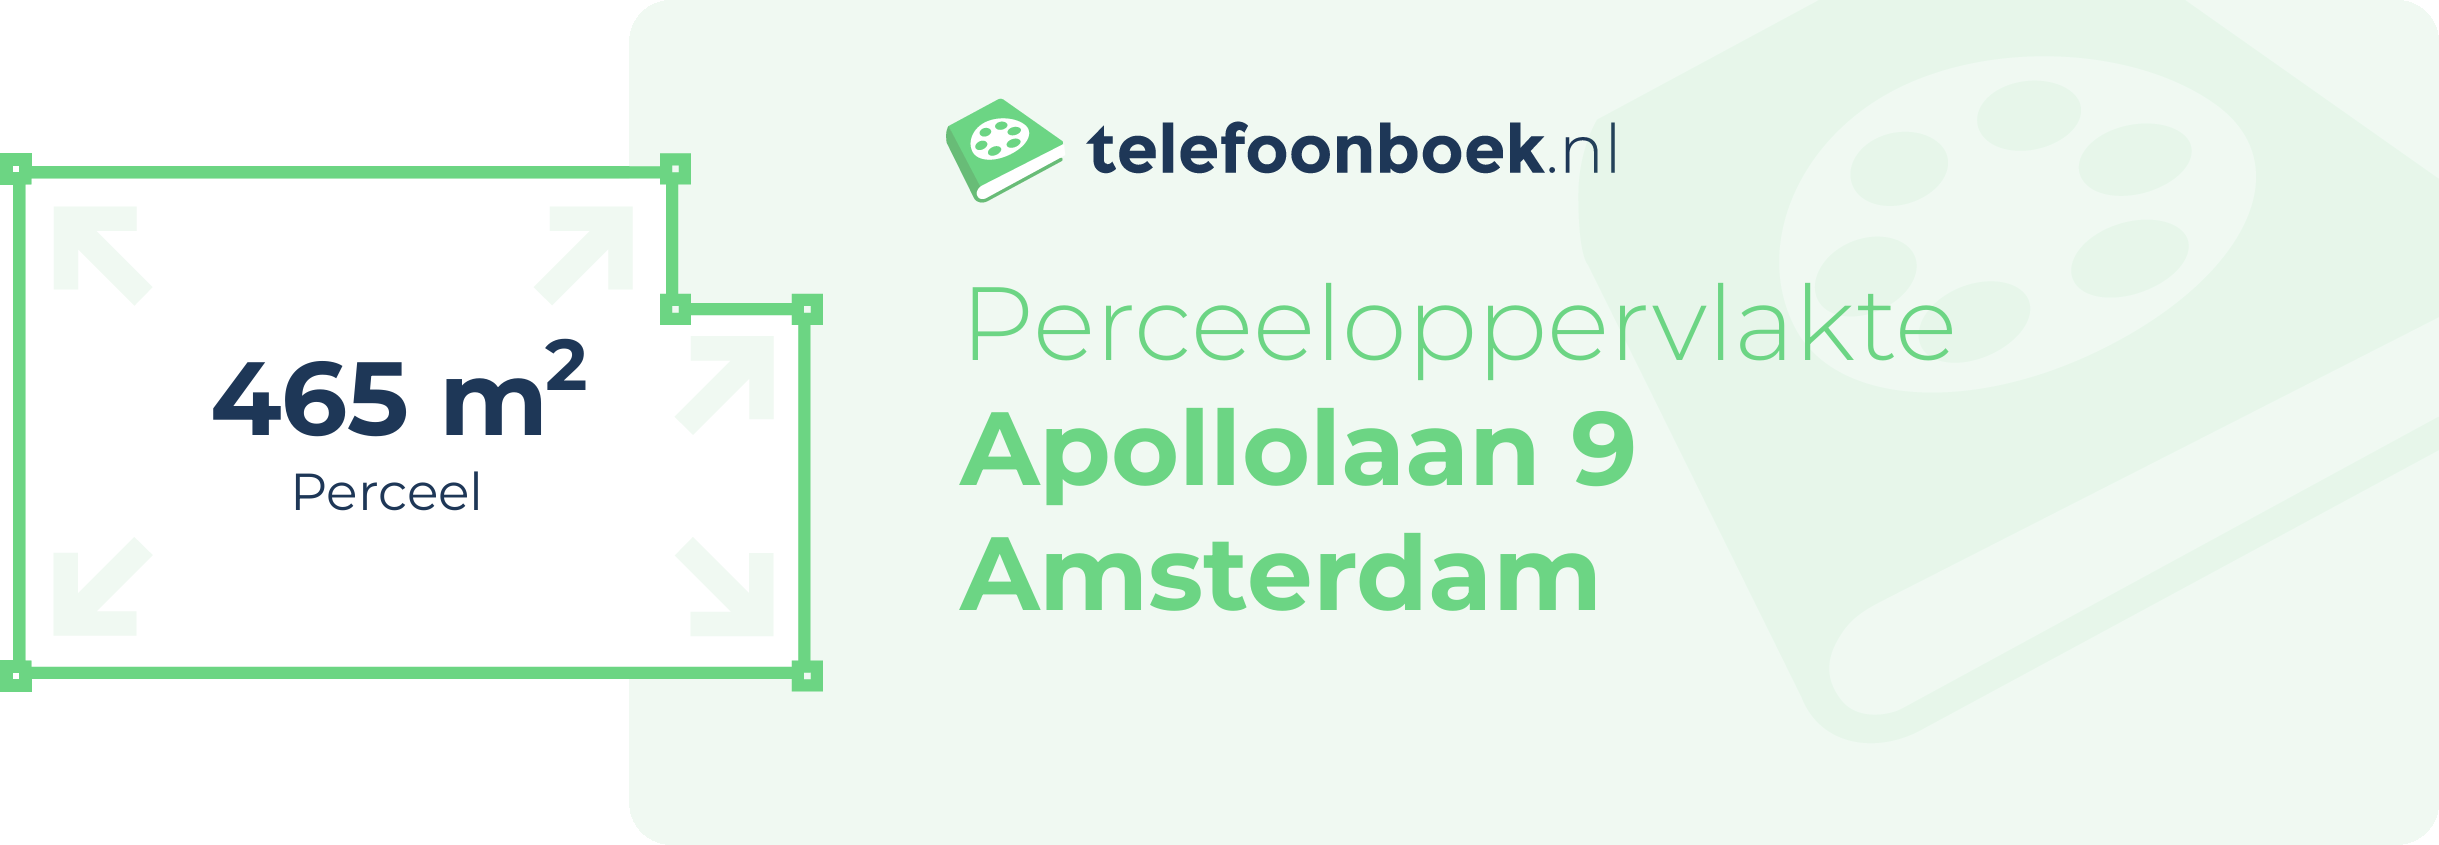 Perceeloppervlakte Apollolaan 9 Amsterdam